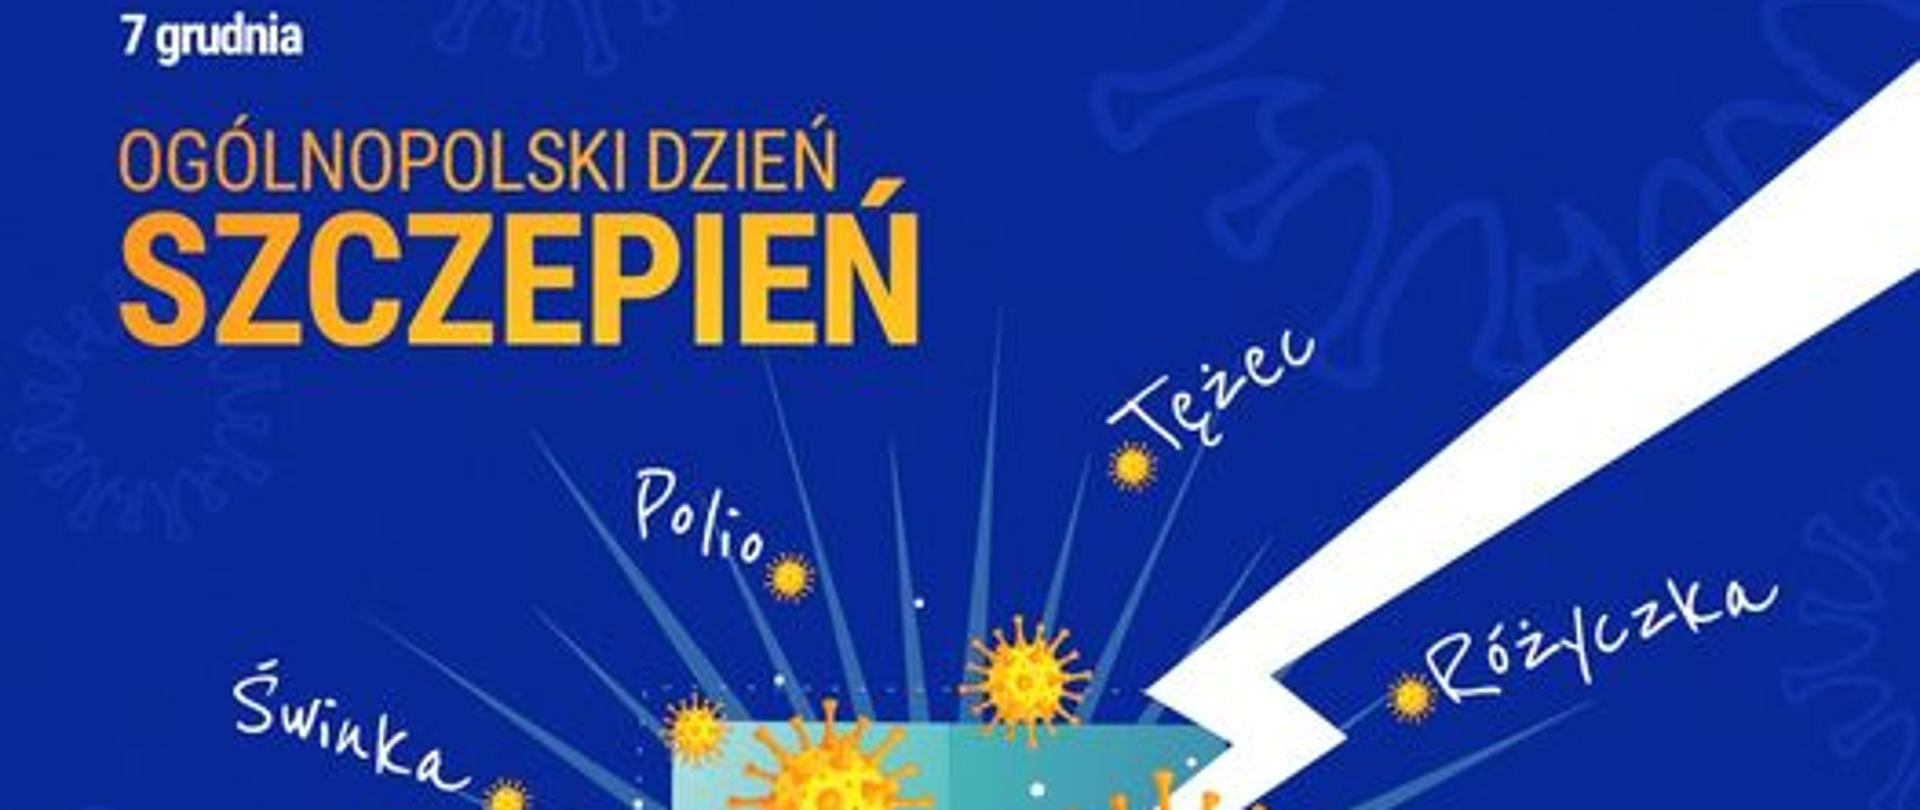 7 grudnia Ogólnopolski Dzień Szczepień - Program szczepień ochronnych na 2023 r.